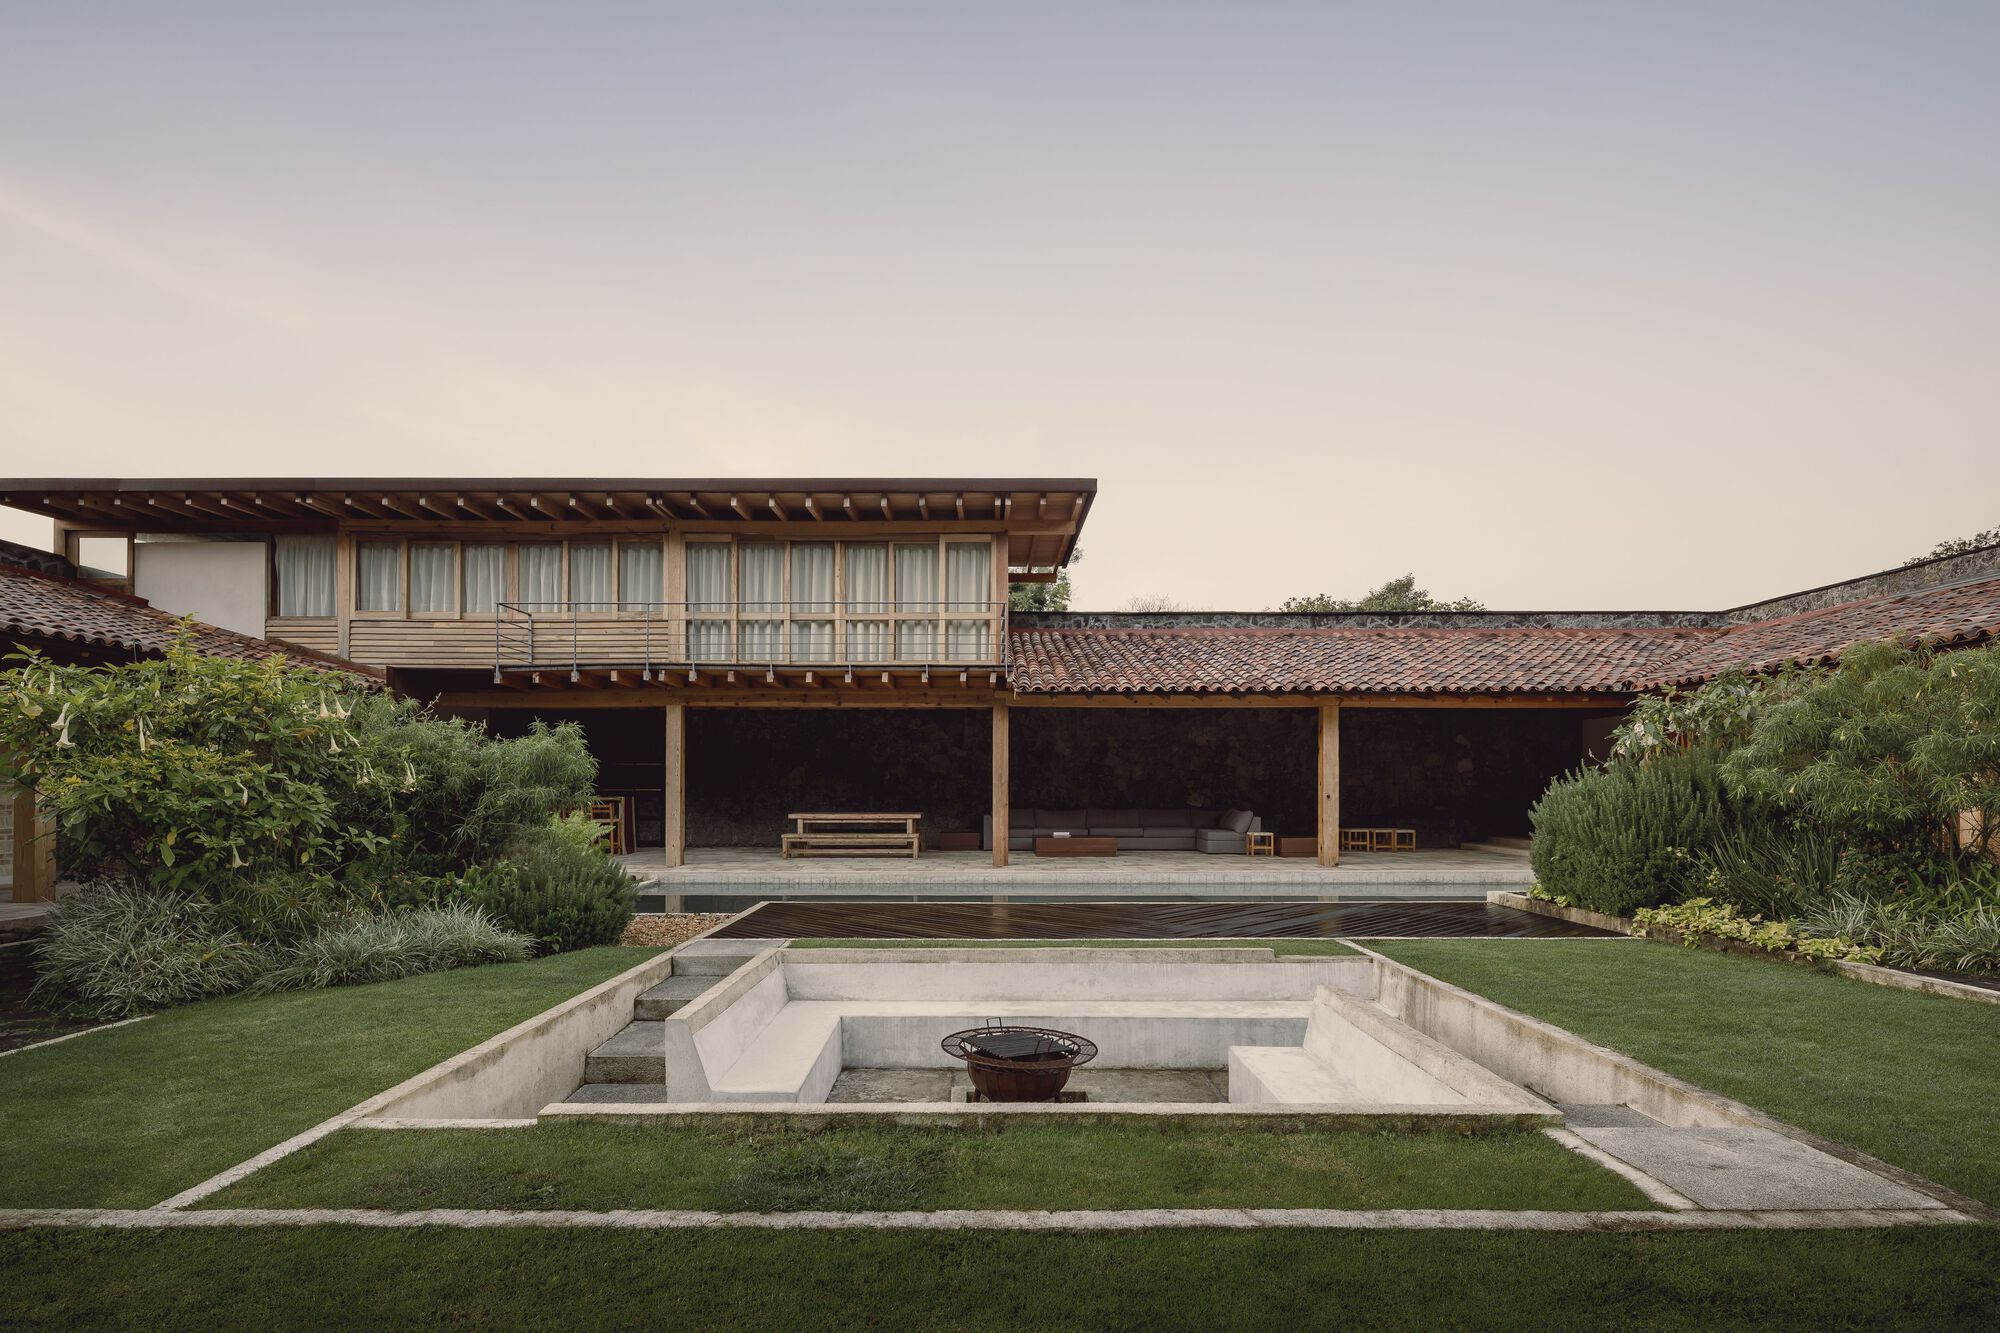 La Hacienda Jardín Interprets Mexican Hacienda Architecture as a Weekend Home